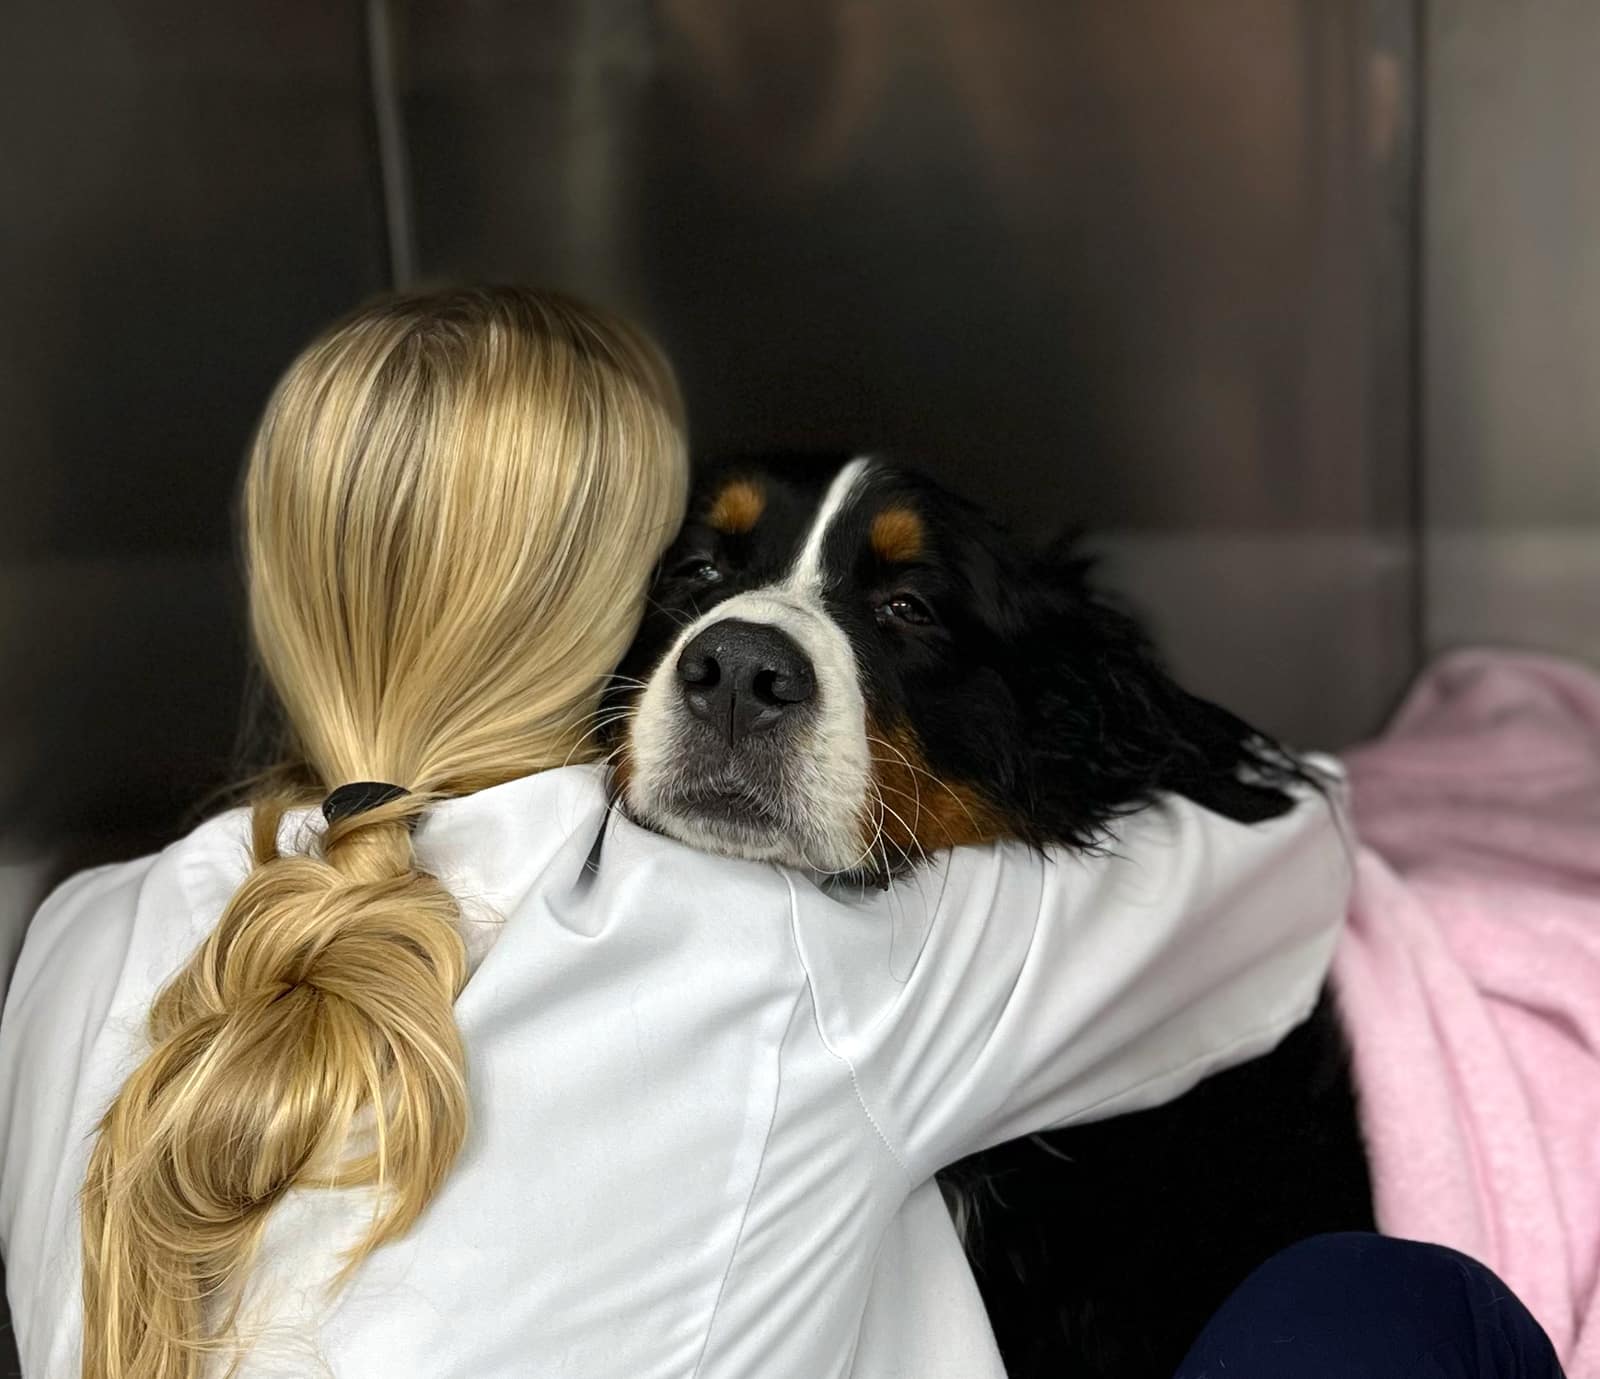 Veterinarian Hugging a dog